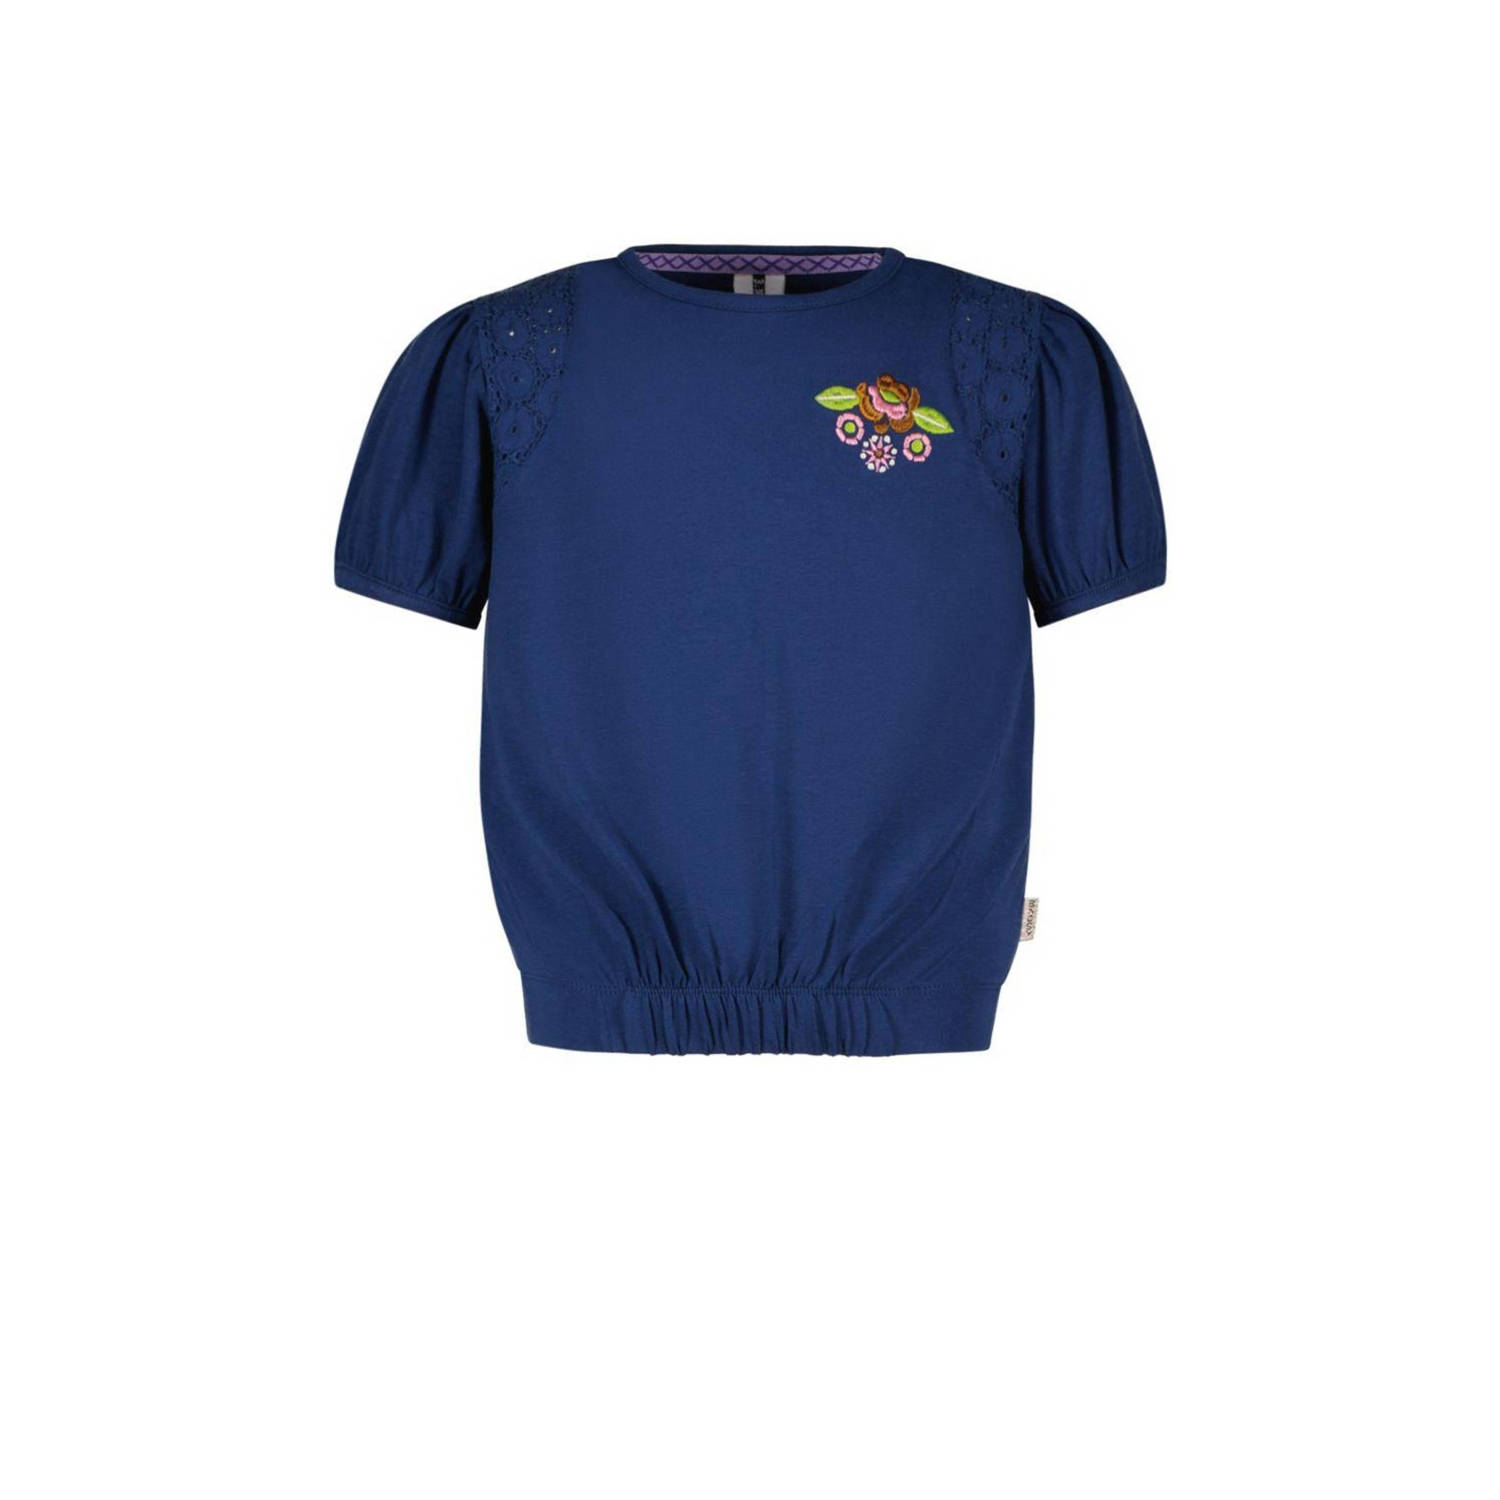 B.Nosy T-shirt met printopdruk donkerblauw Meisjes Stretchkatoen Ronde hals 122 128